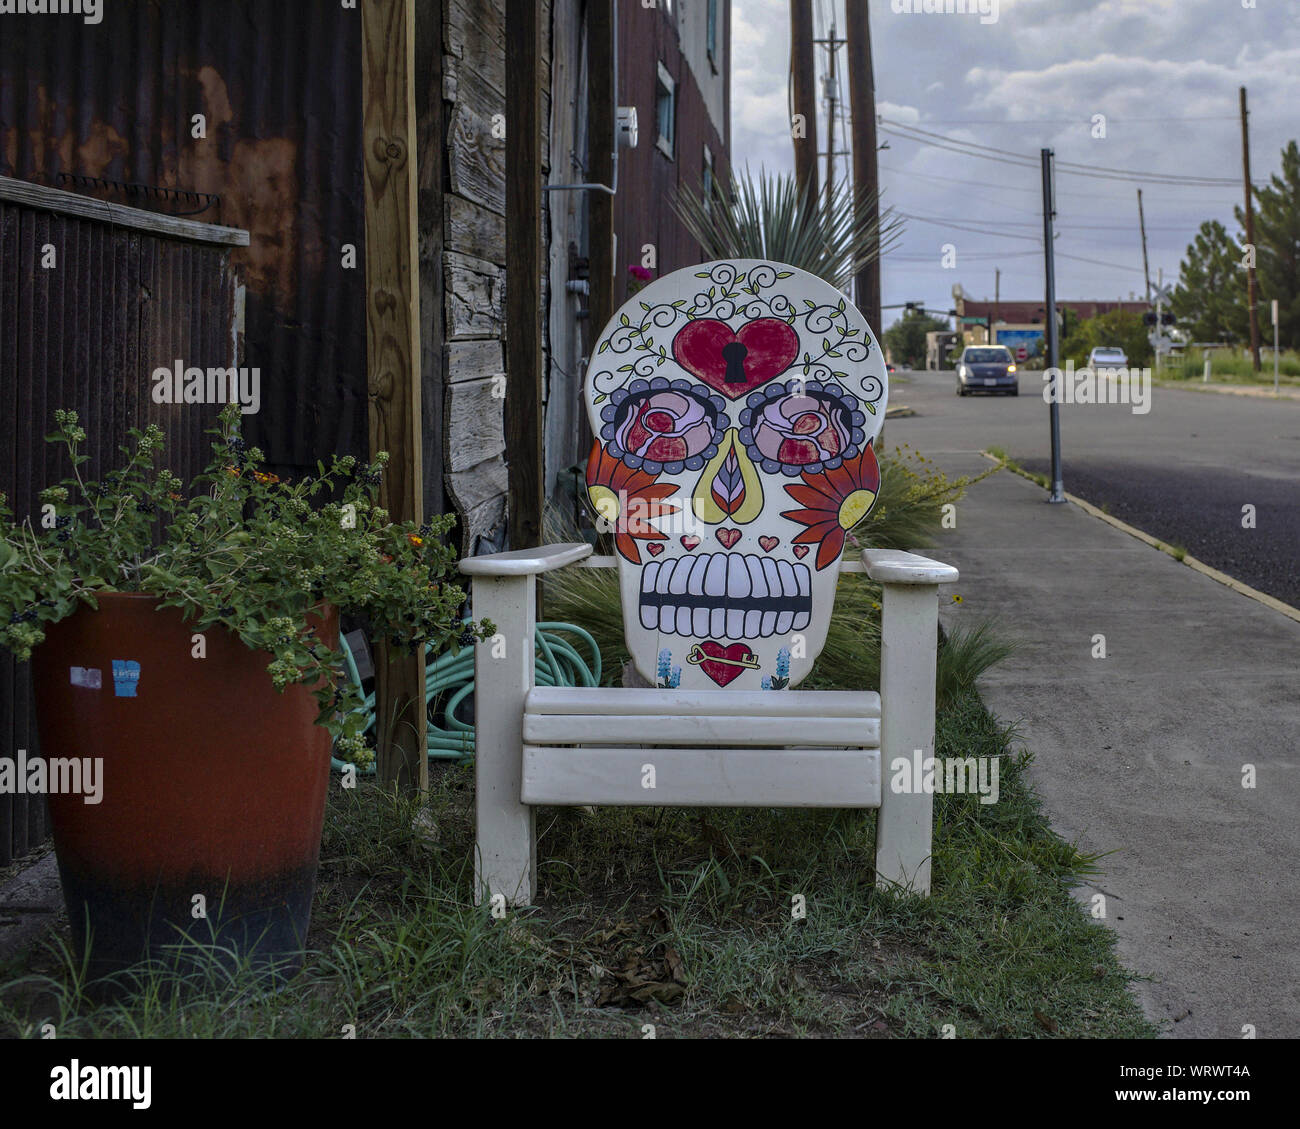 Sedia adornata con un calavera, un messicano tradizionale rappresentazione di un cranio, in una strada di Alpine, Texas. Foto Stock